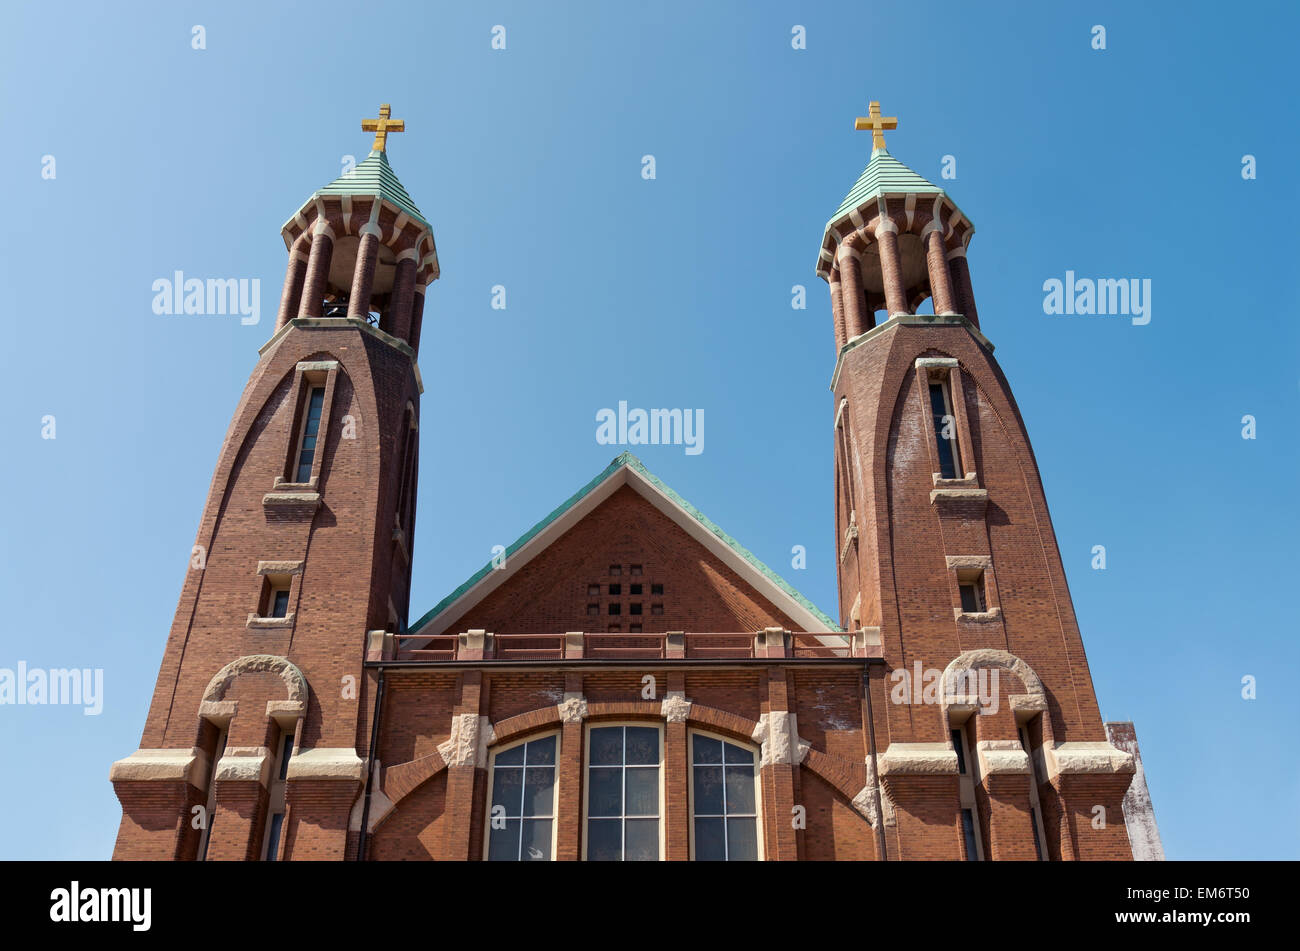 Kirchenglocke Türme und Türmchen in Saint Paul Jugendstil Architektur gegen blauen Himmel Stockfoto